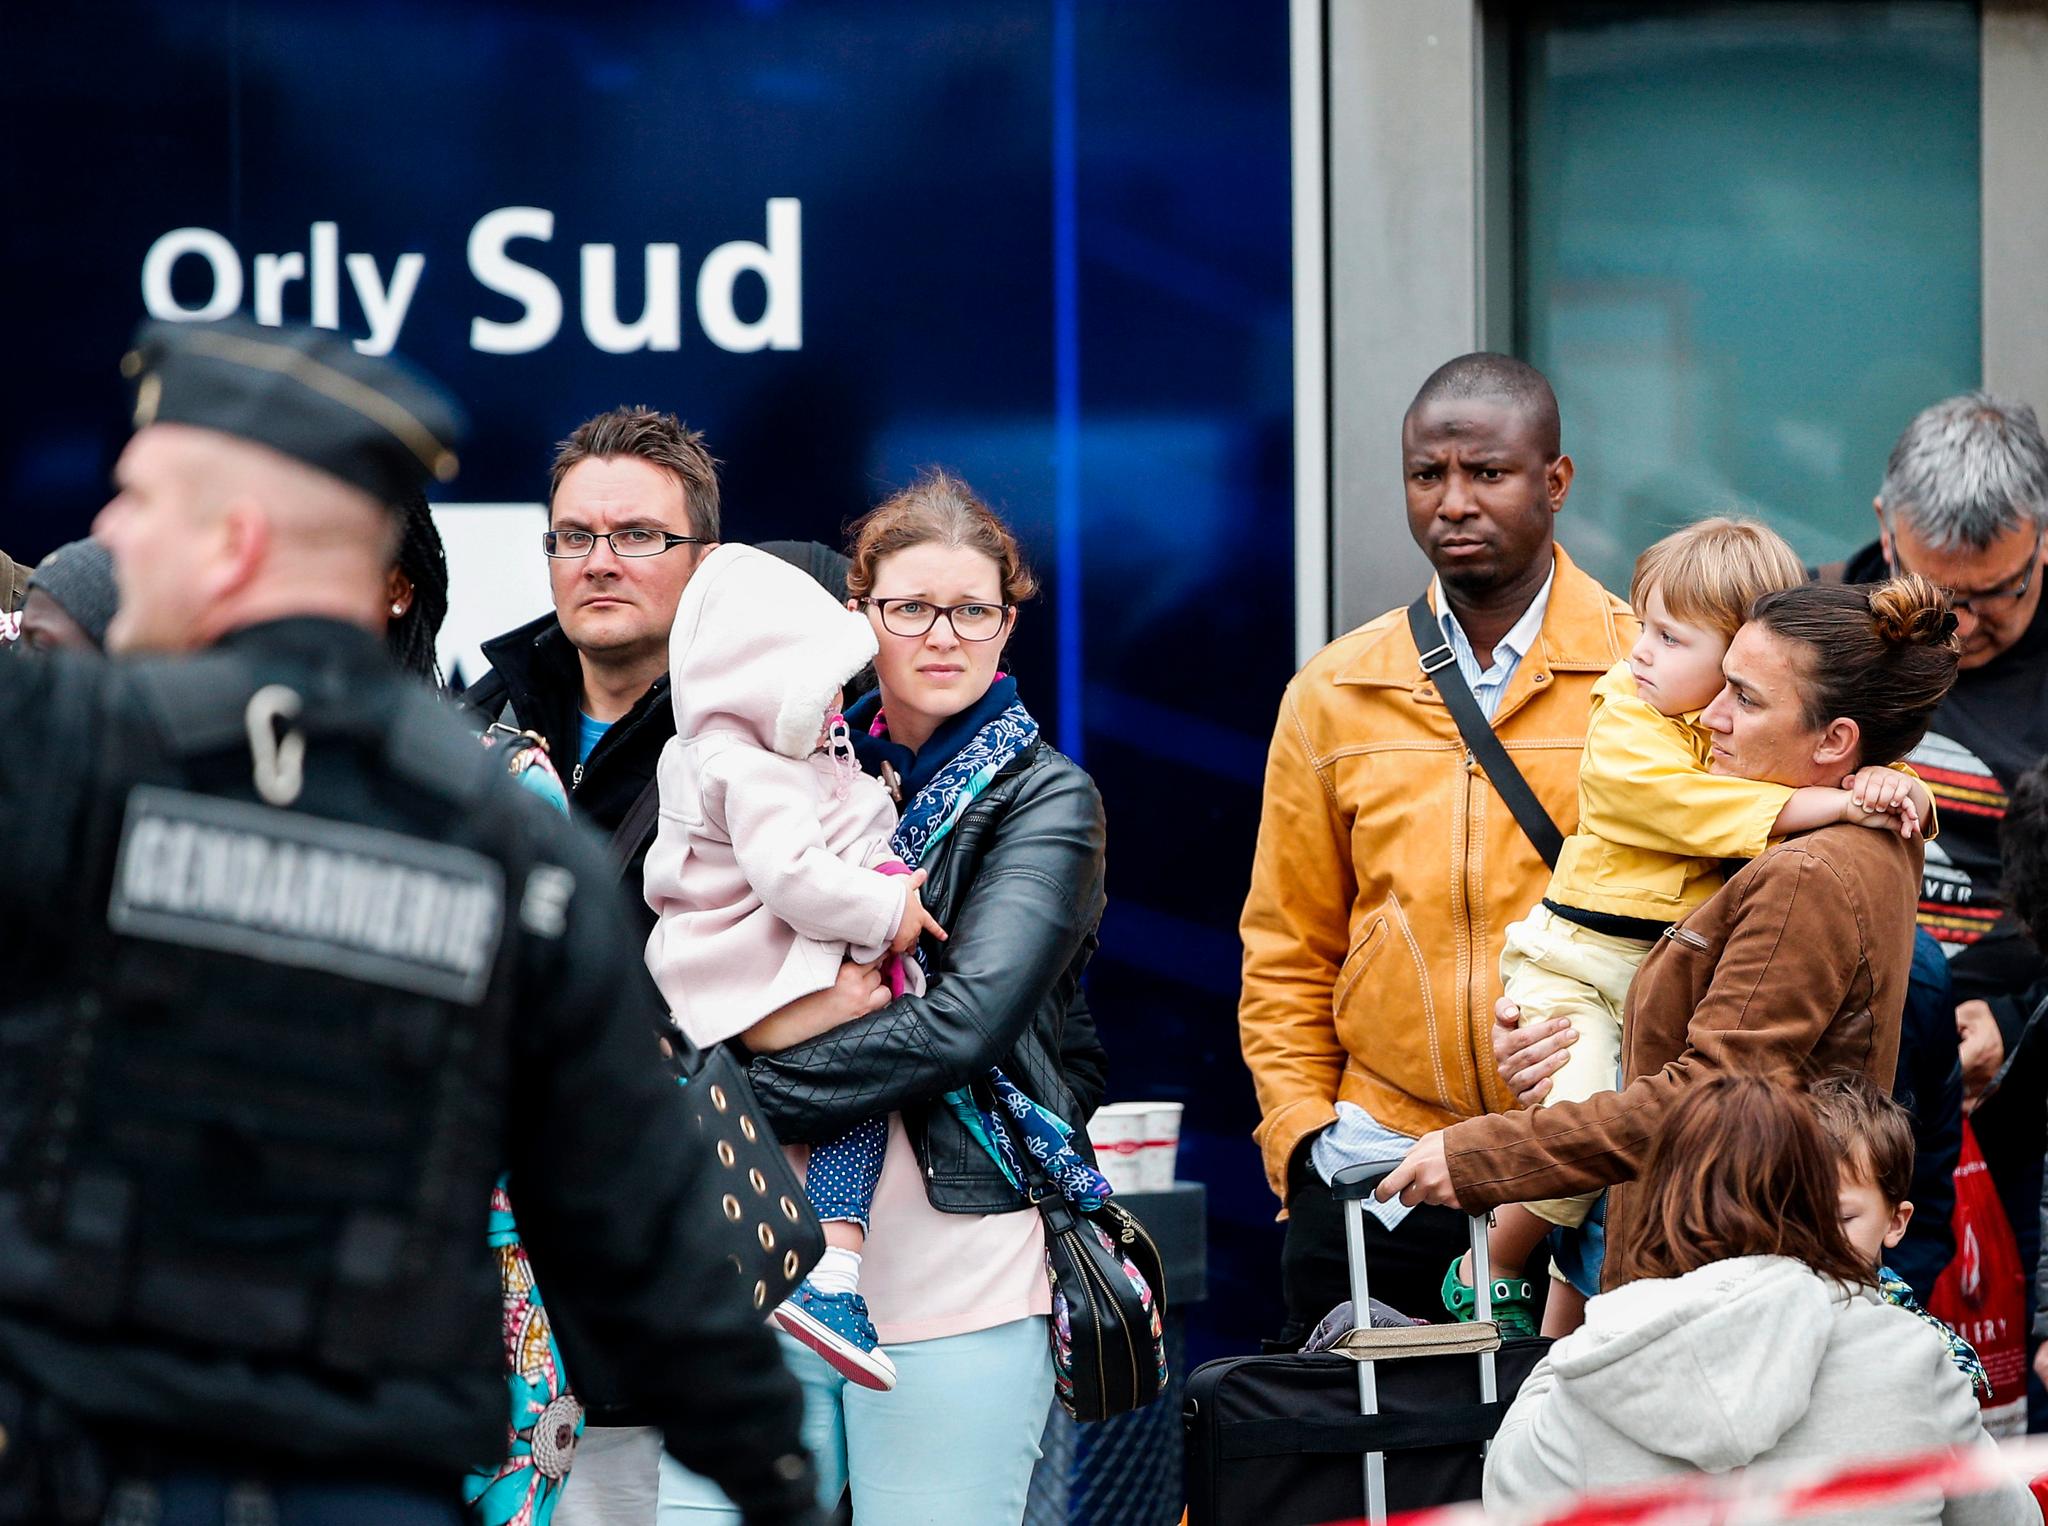 3000 flypassasjerer ble evakuert ved flyplassen Orly utenfor Paris lørdag formiddag. Frankrike er fortsatt i unntakstilstand etter terrorangrepene i Paris og Nice. 